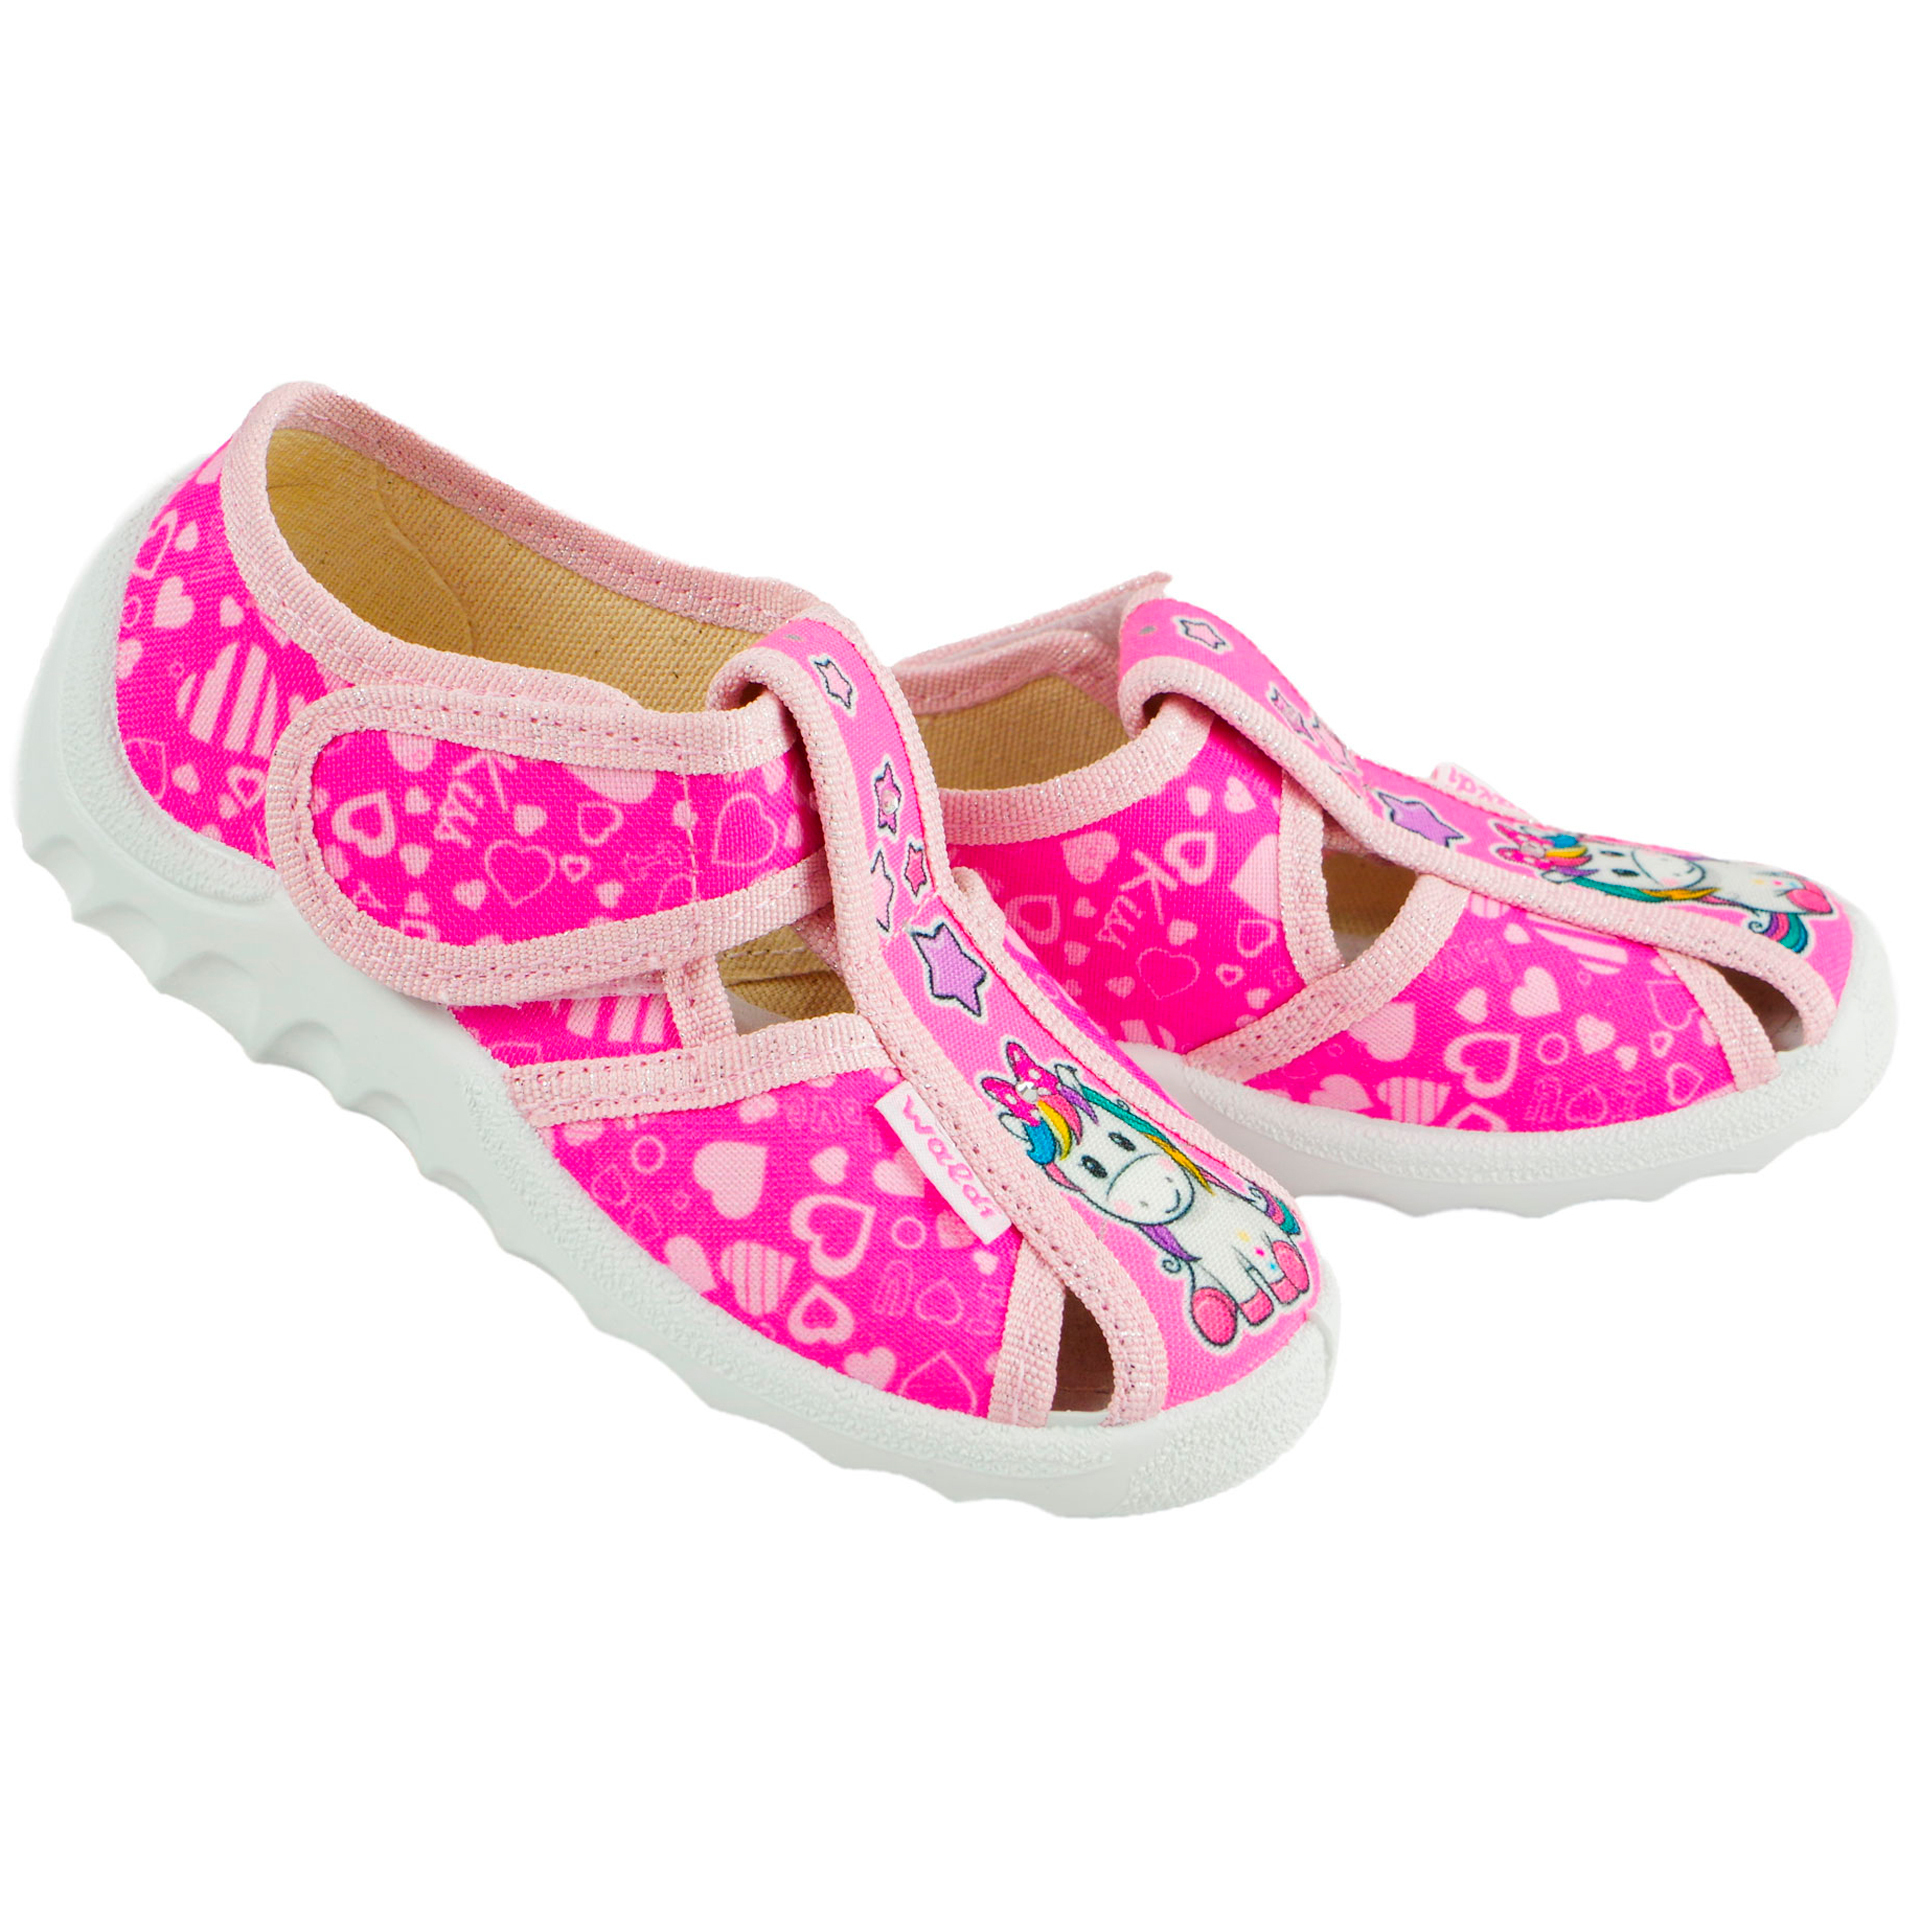 Текстильная обувь для девочек Тапочки Маша (2019) цвет Розовый 21-27 размеры – Sole Kids. Фото 4